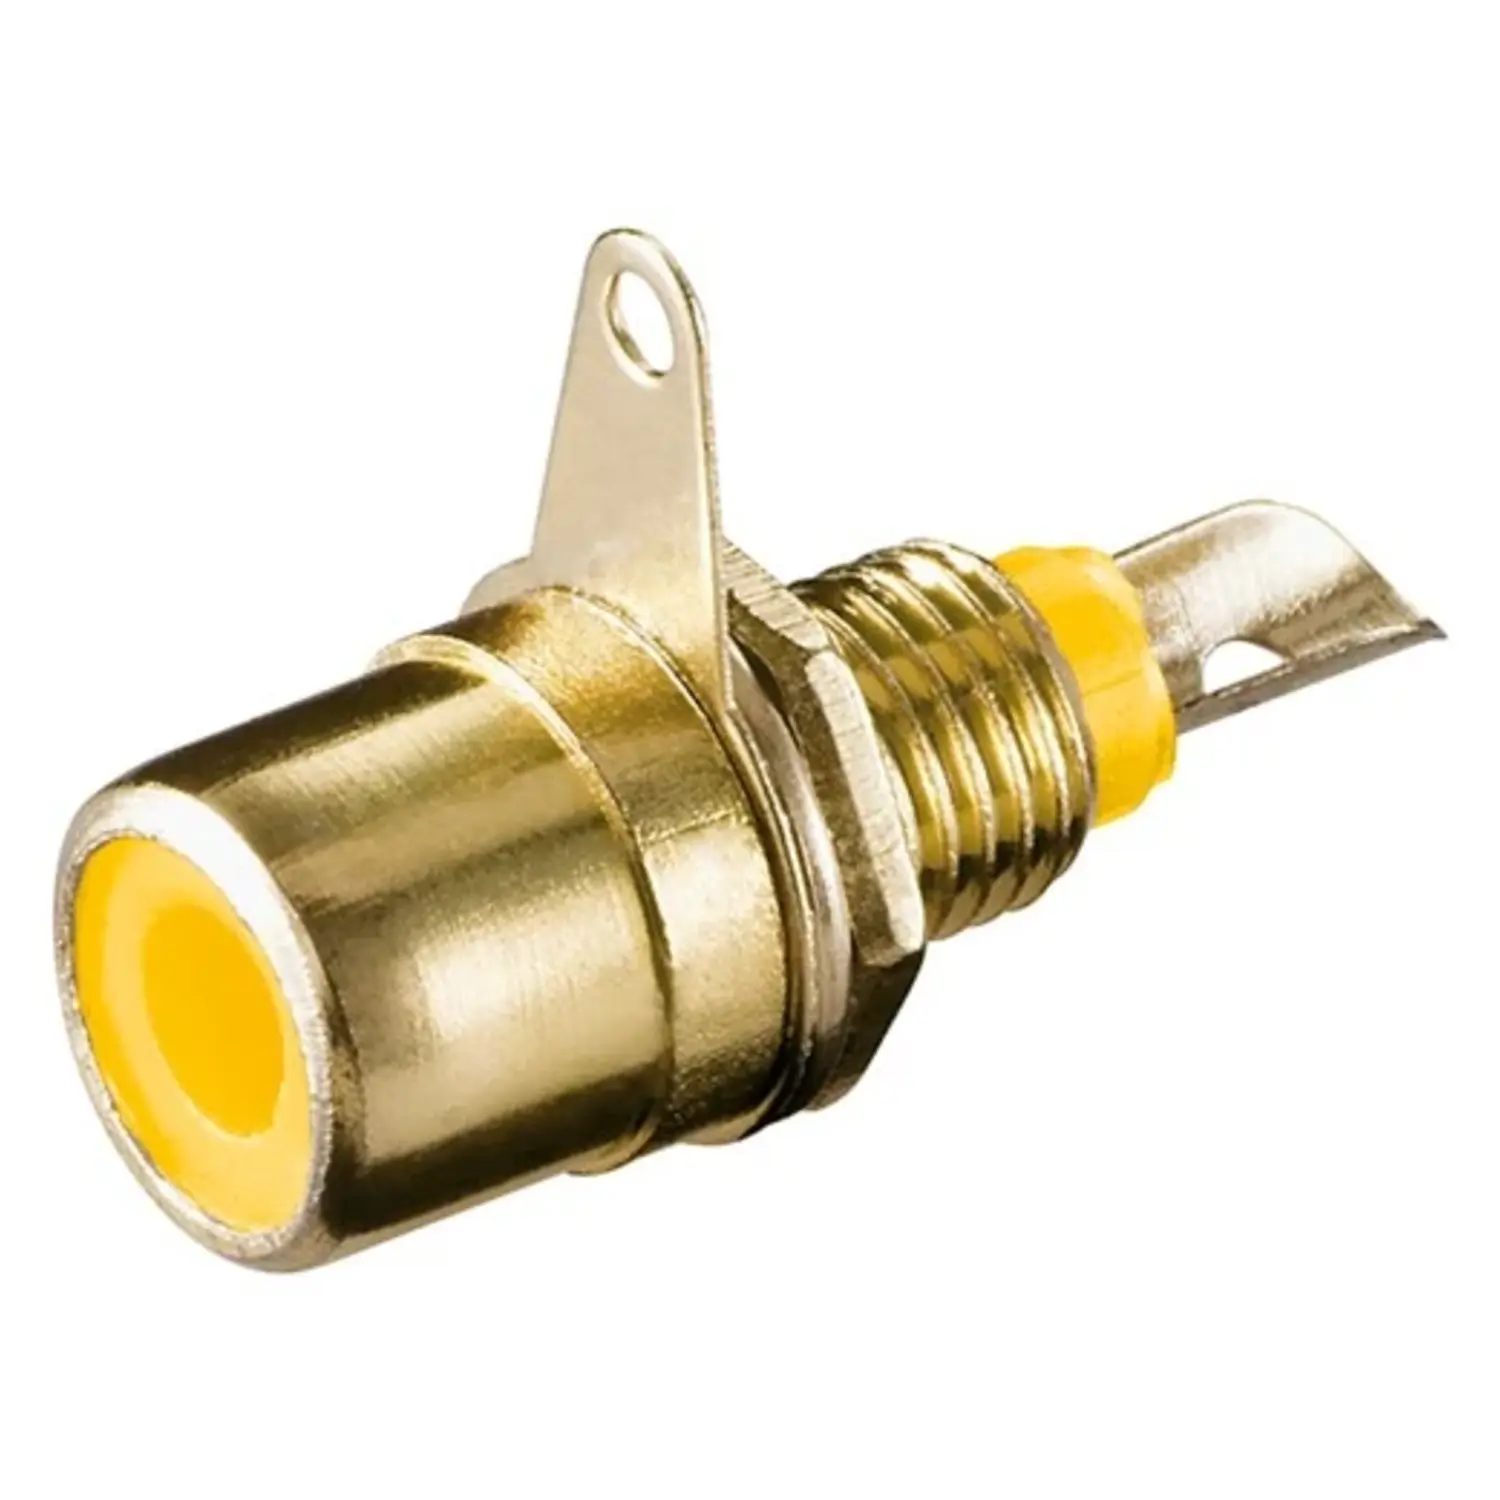 immagine del prodotto connettore presa rca da pannello placcata in oro di metallo giallo wnt 11314